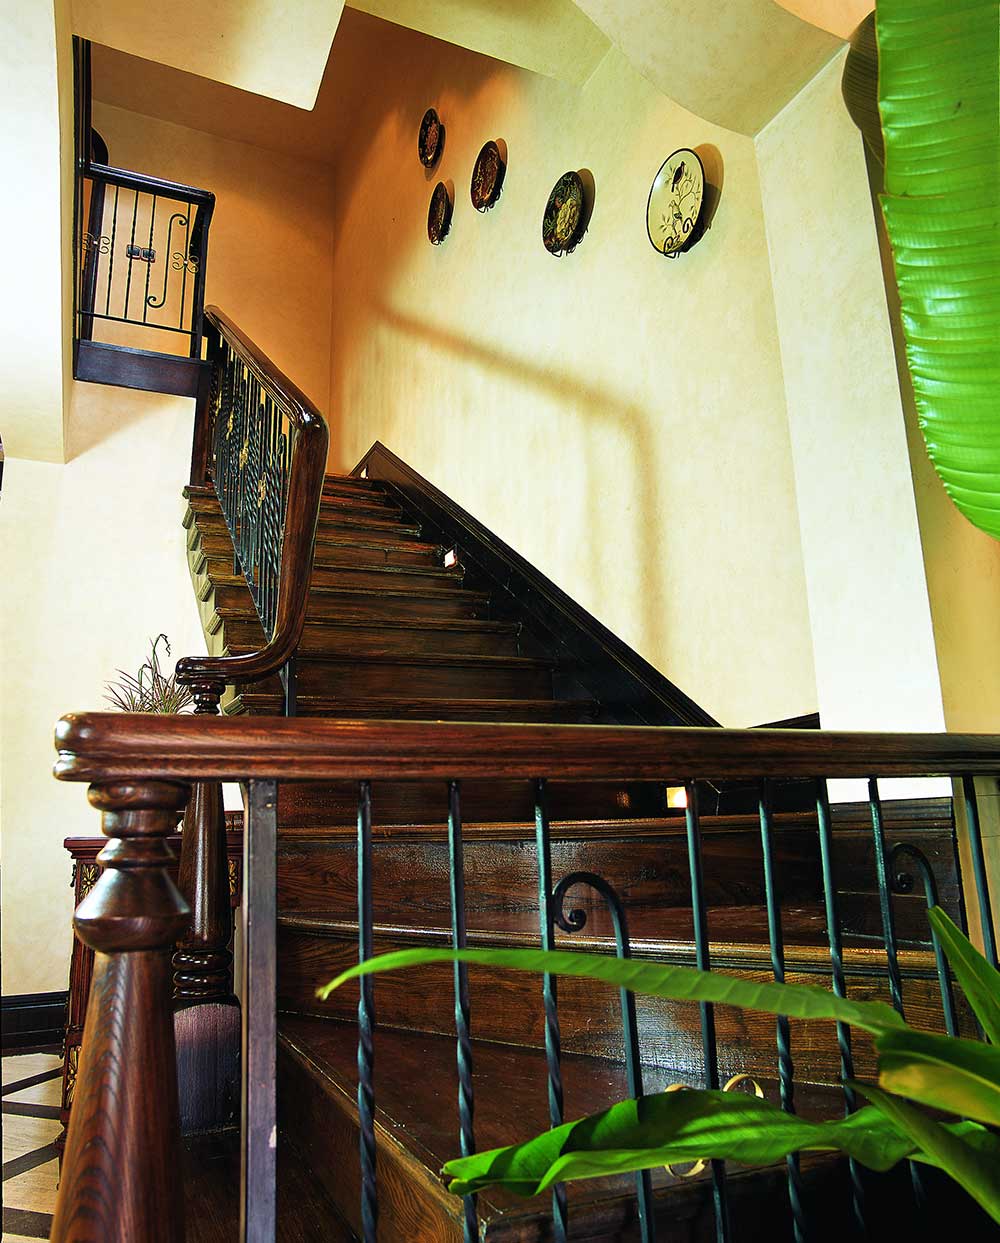 深褐色的楼梯、扶手与浅褐色的壁纸形成对比，并有多个圆盘瓷器装饰，填充了空白。